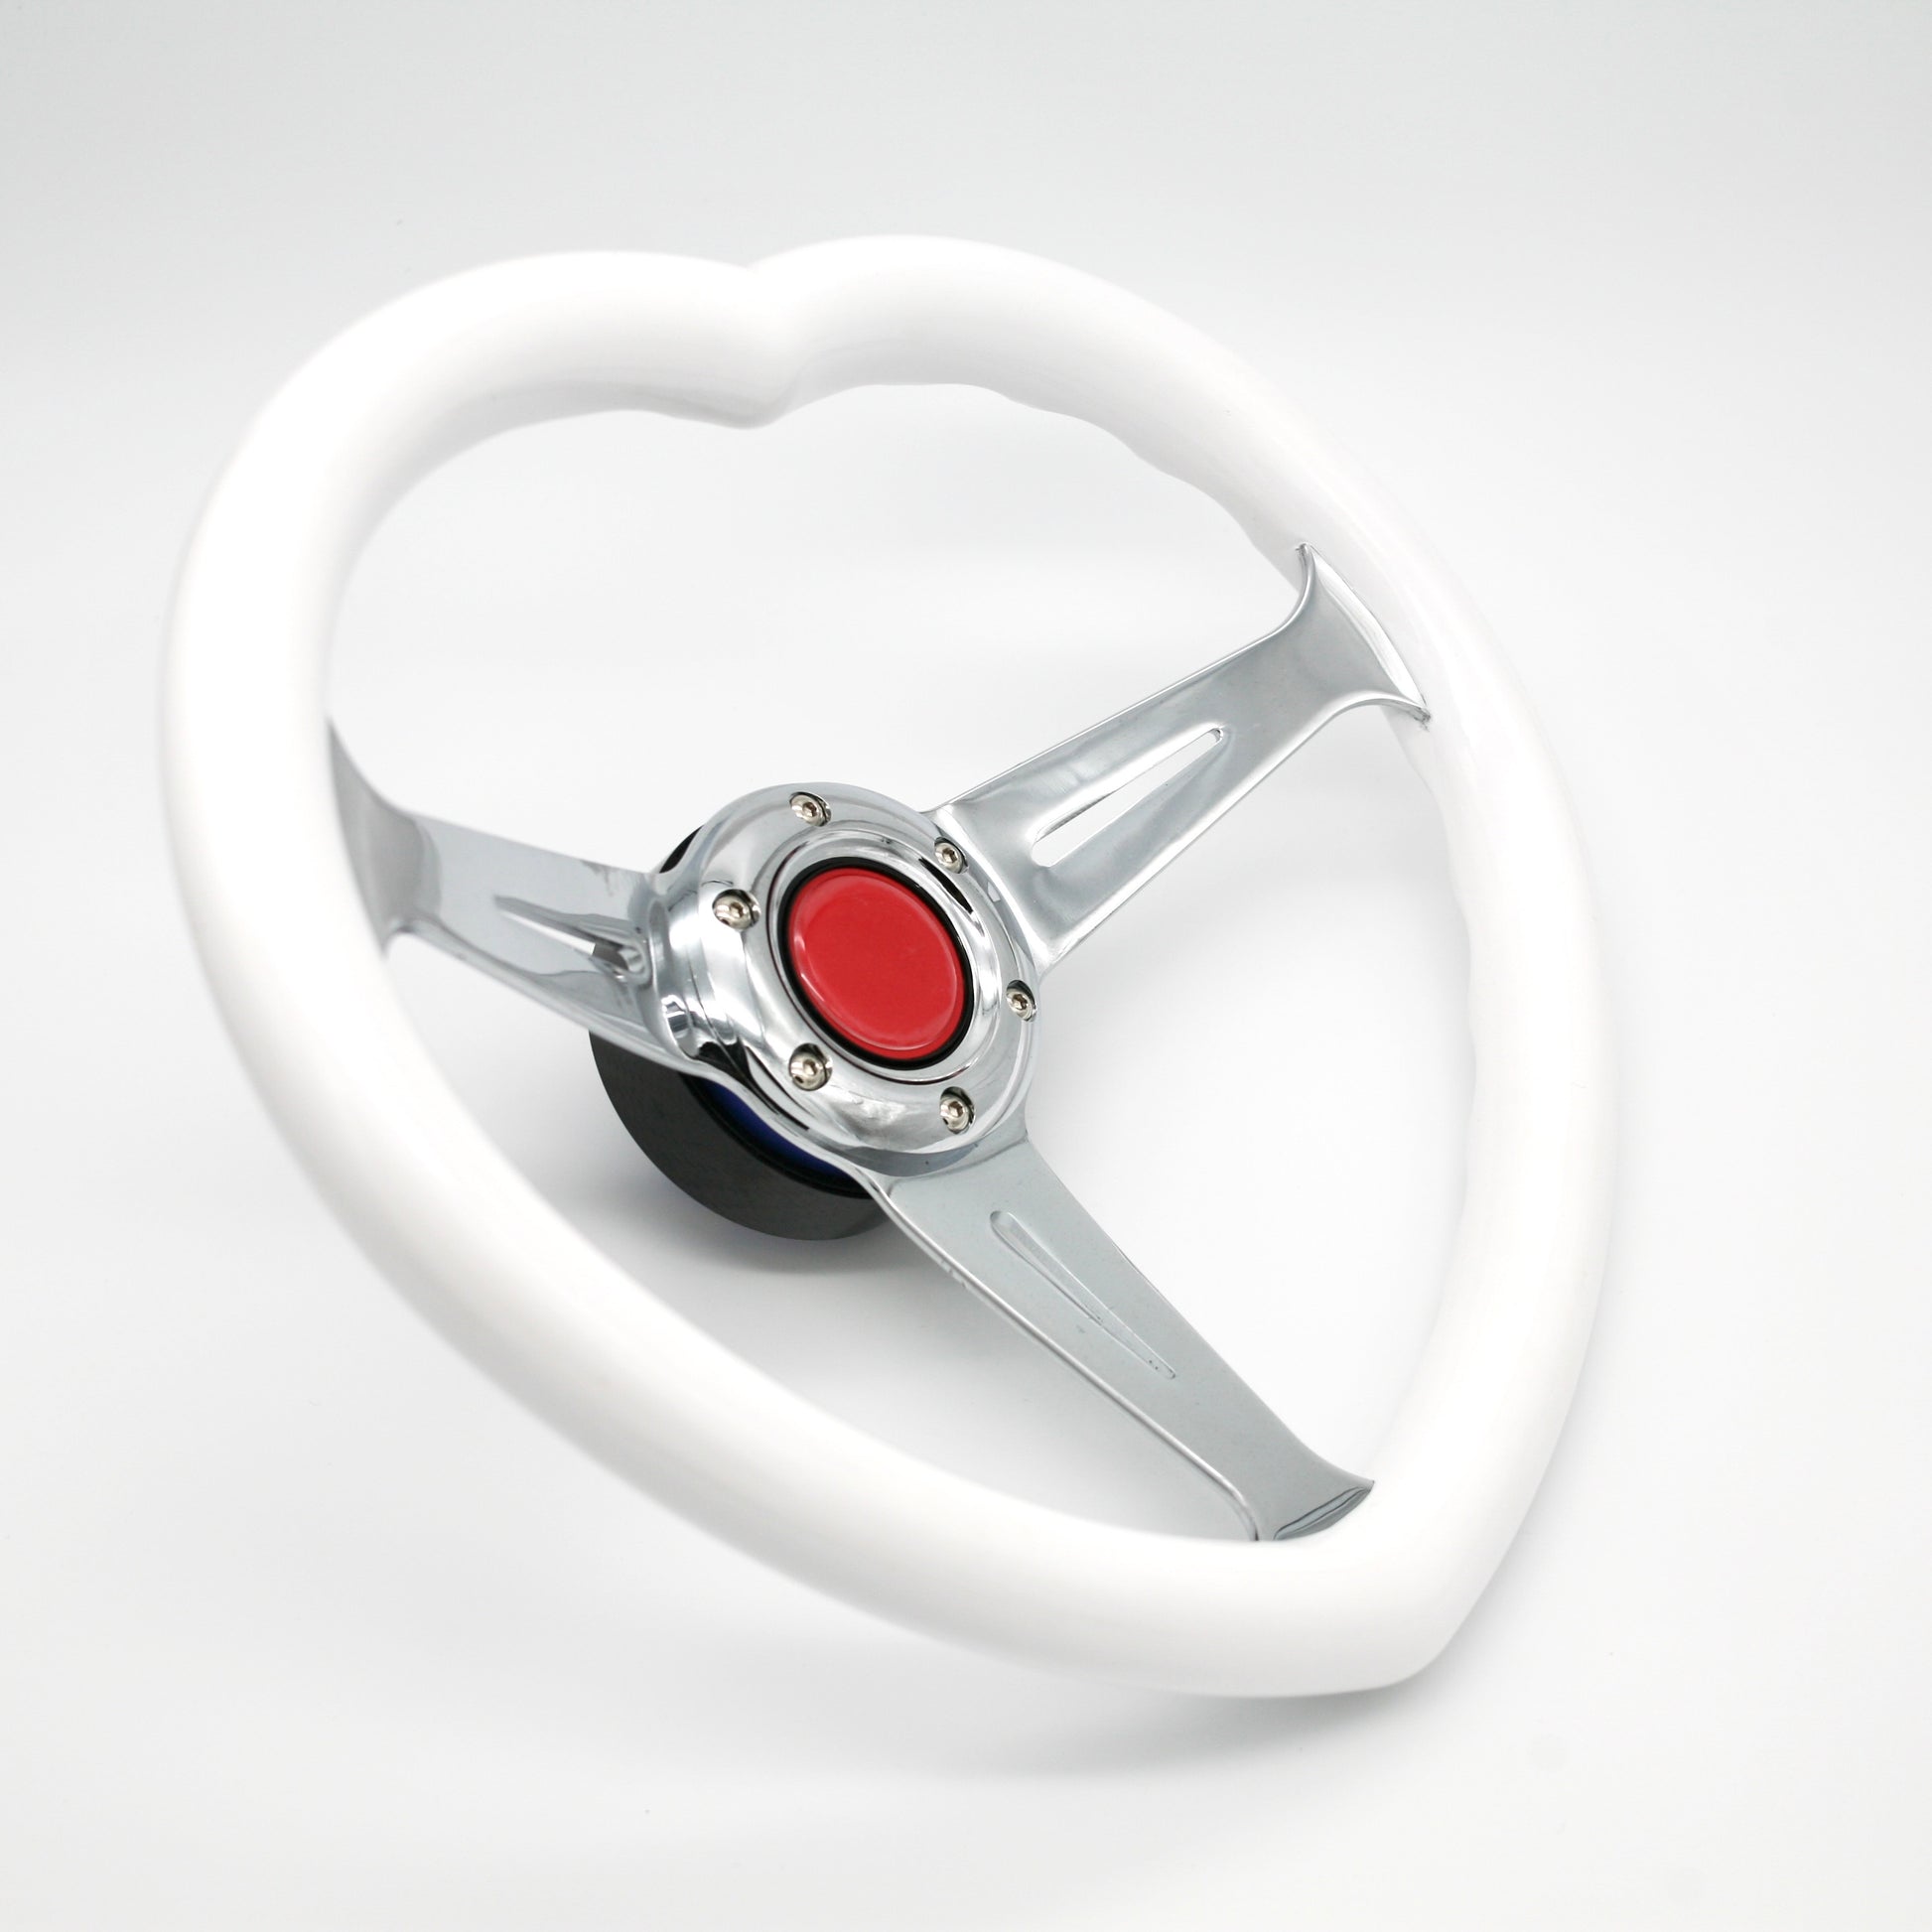 JDM Heart Shaped Racing Steering Wheel Universal Car ABS Steer Wheel Anime Kawaii Cute Car Accessories - VINYL HOUZE